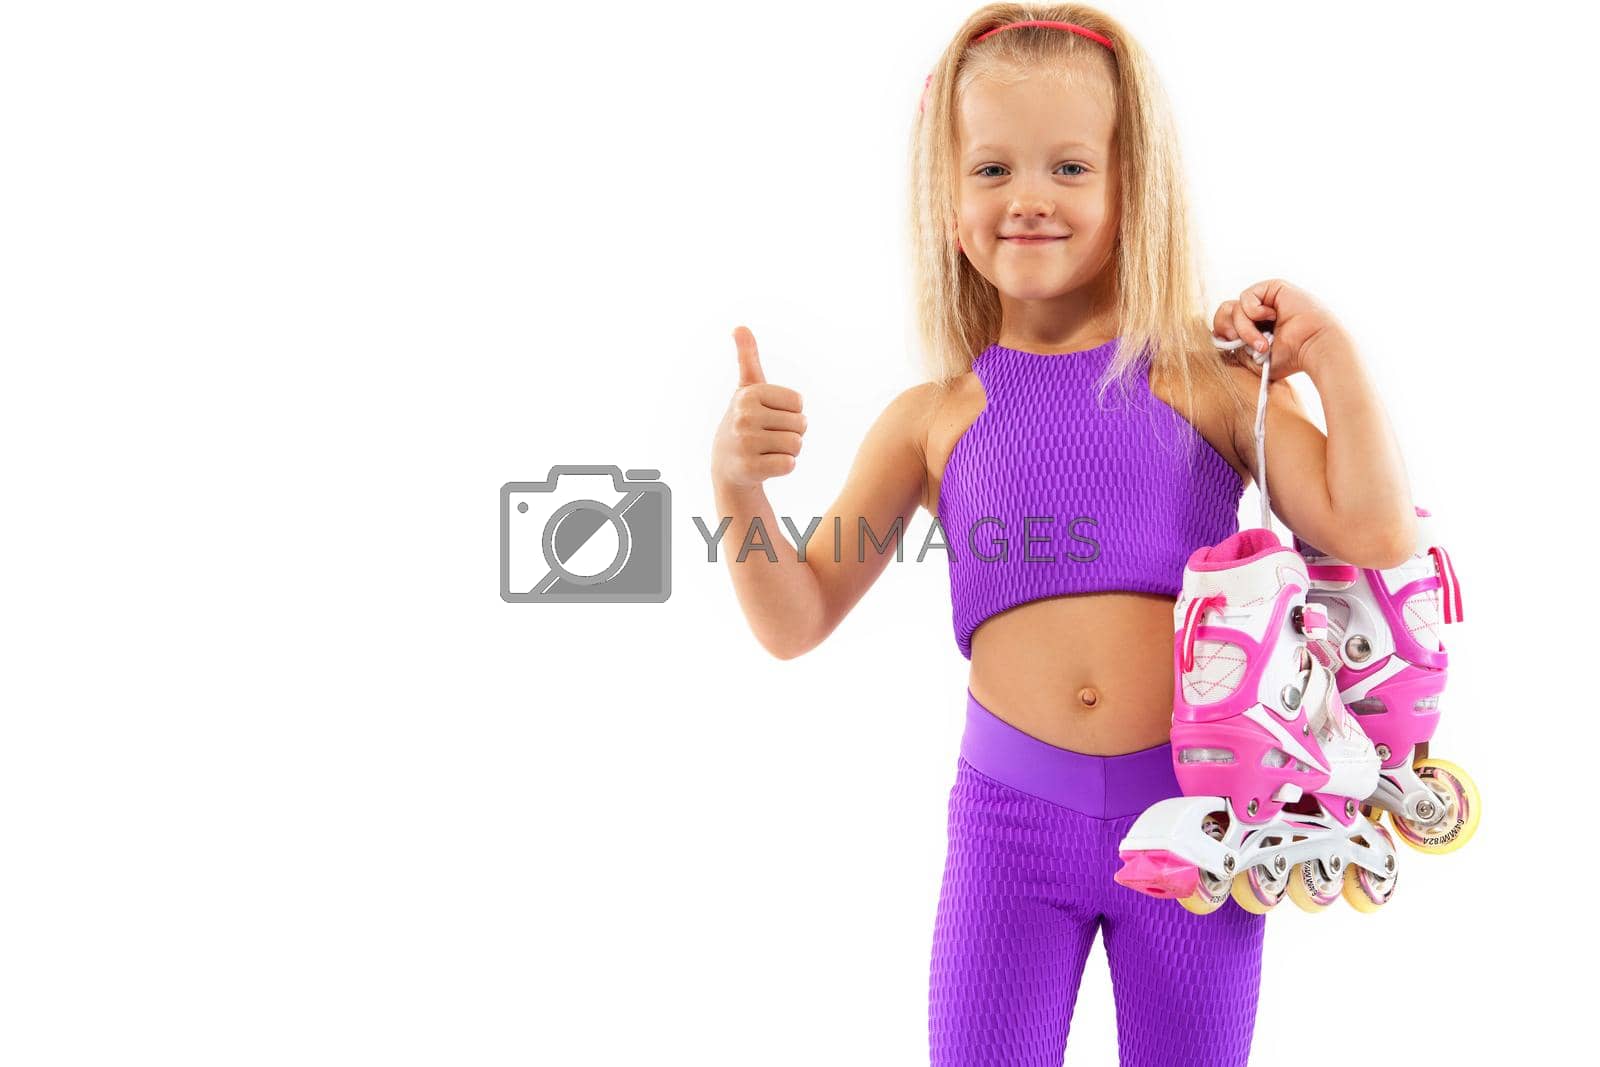 Royalty free image of Girl, kid posing in studio wearing inline rollerskates by MikeOrlov